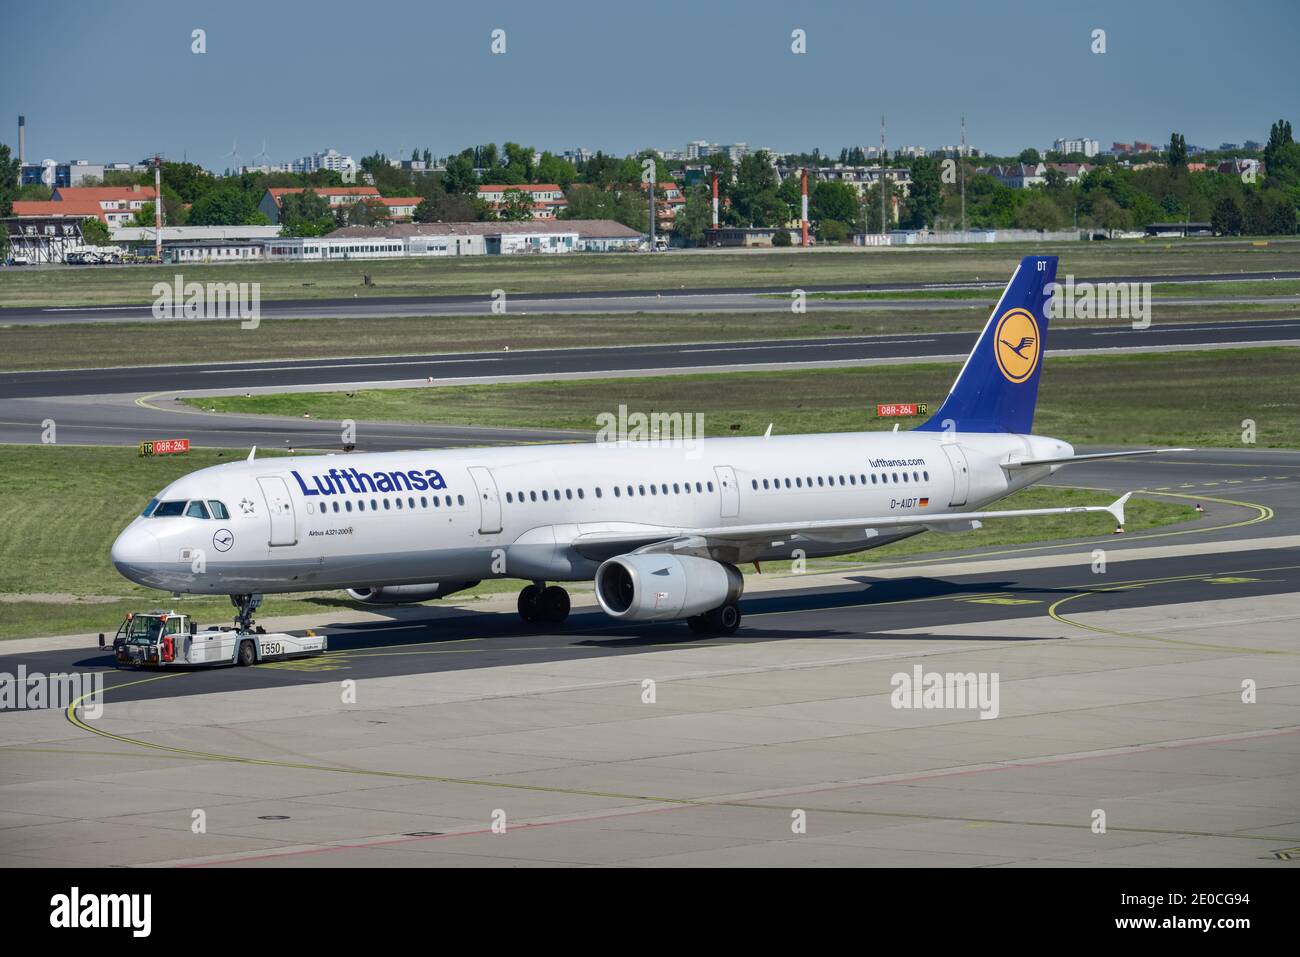 Flugzeug, Lufthansa, Vorfeld, Flughafen, Tegel, Reinickendorf, Berlin, Deutschland Stock Photo